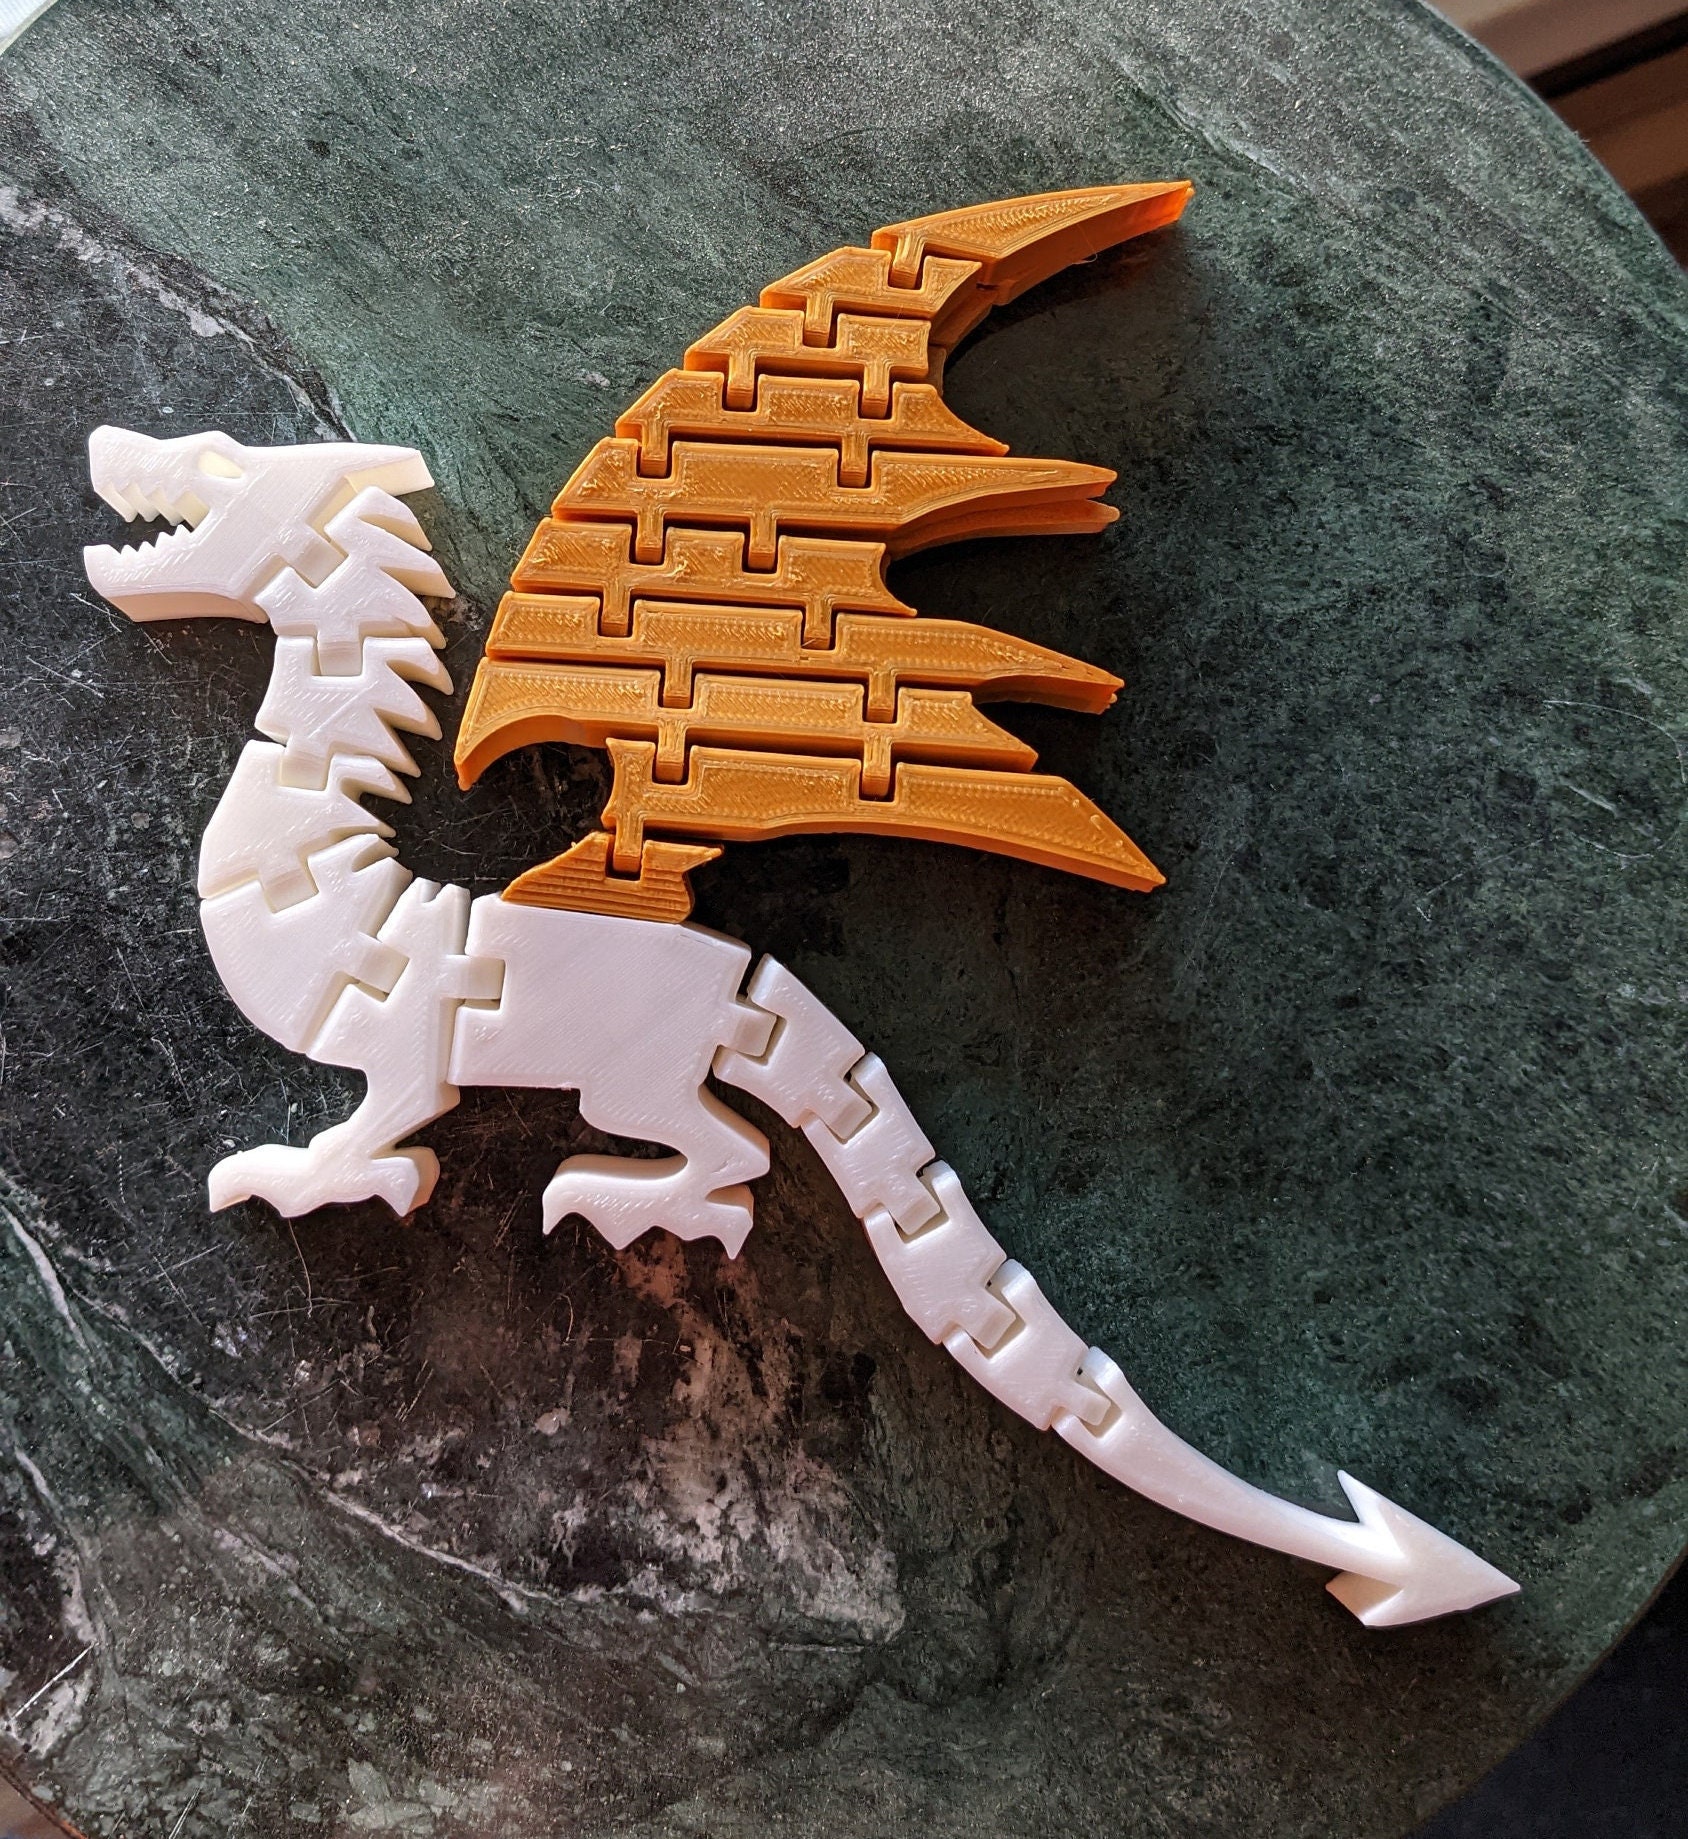 Flexi Axolotl 3D Printed Articulated Fidget Toy Full Color 